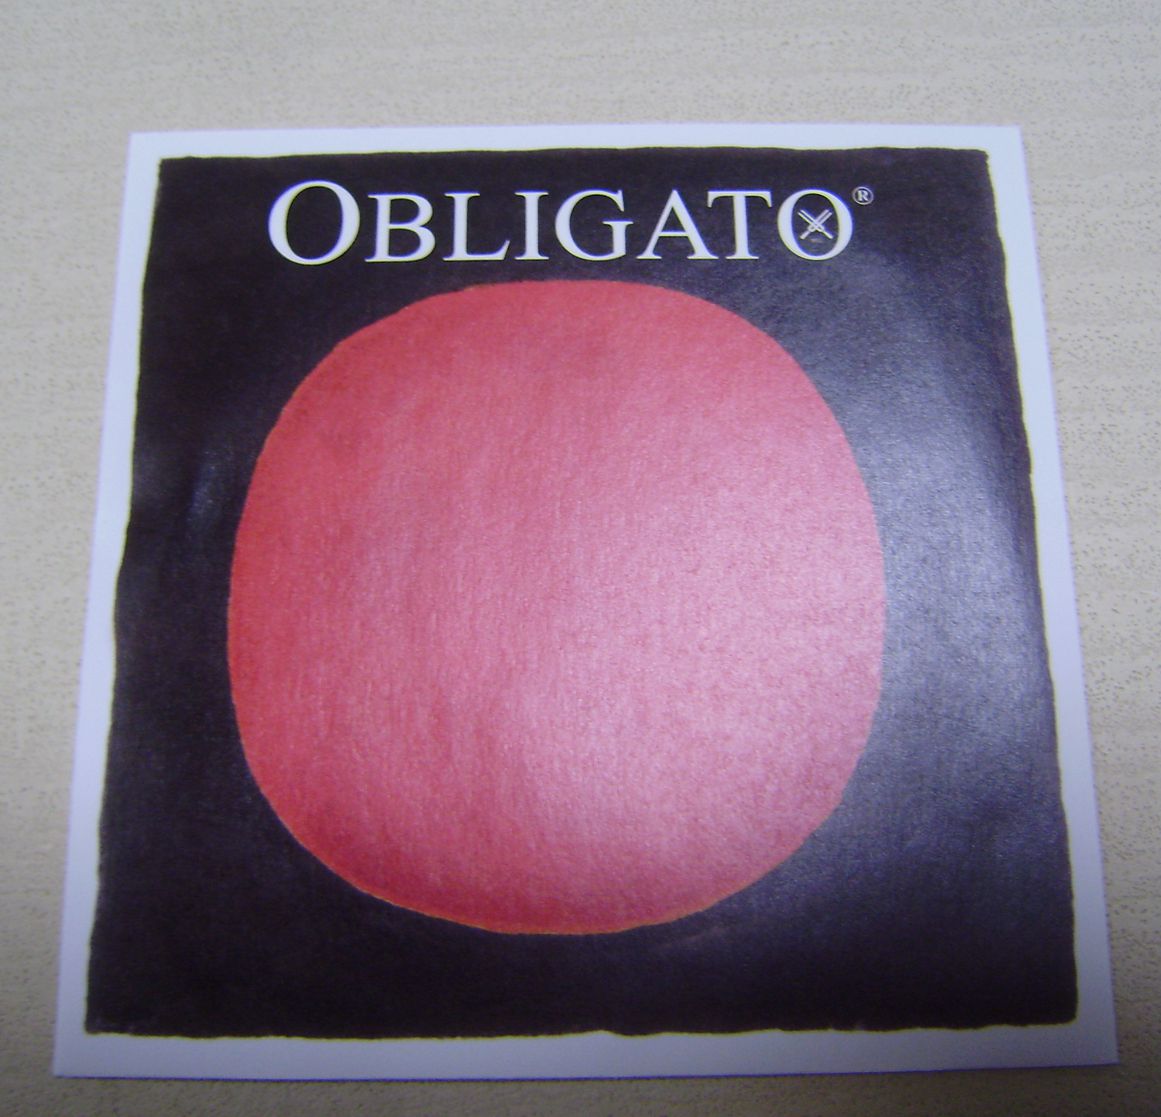  PIRASTRO OBLIGATO RED SUN ̿ø  A    2  -